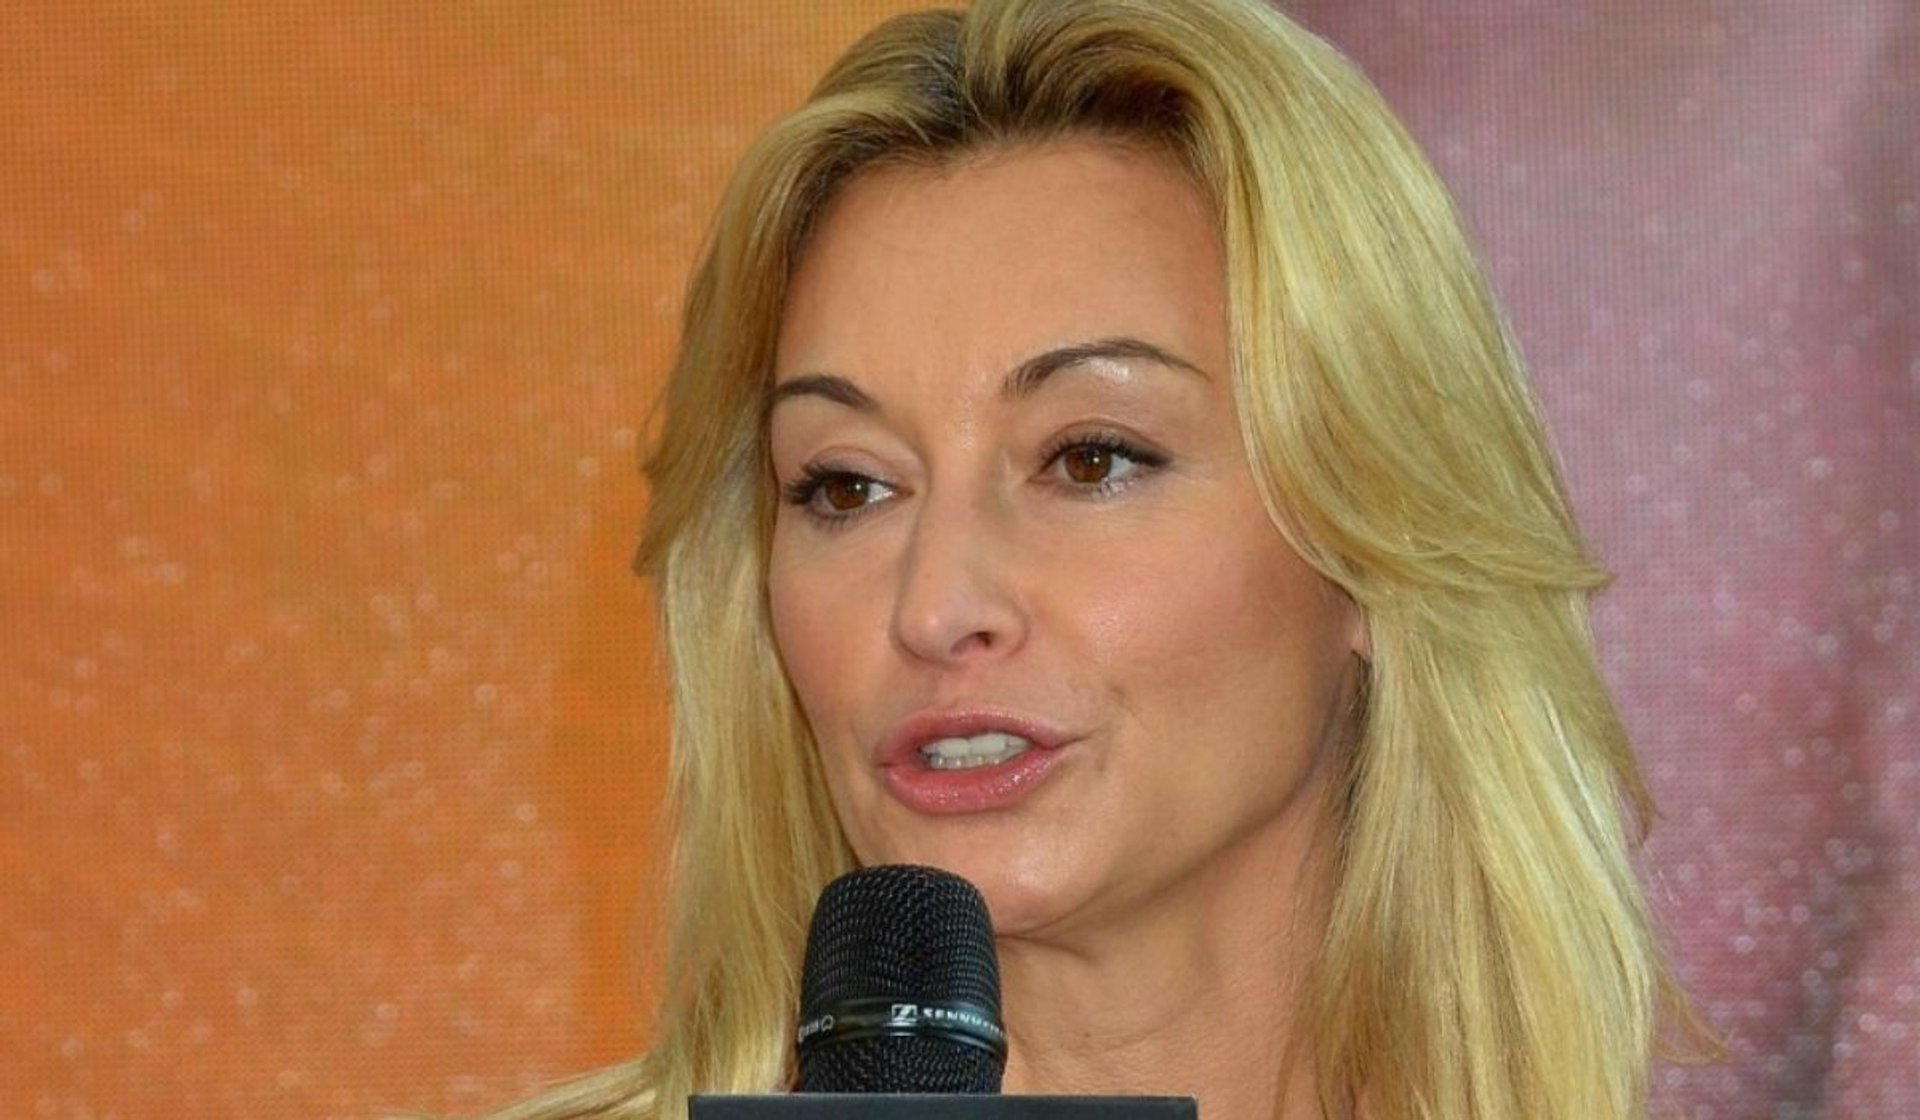 Martyna Wojciechowska